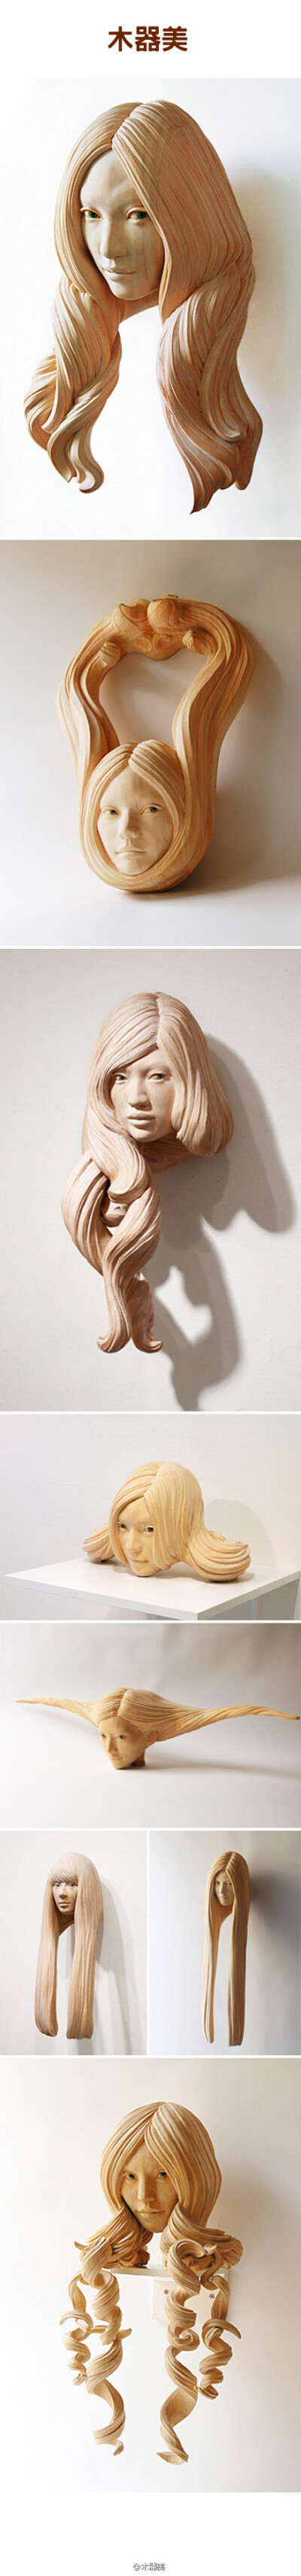 日本艺术家yasuhiro sakurai的柏木木雕作品,作品以人物肖像为主,神秘